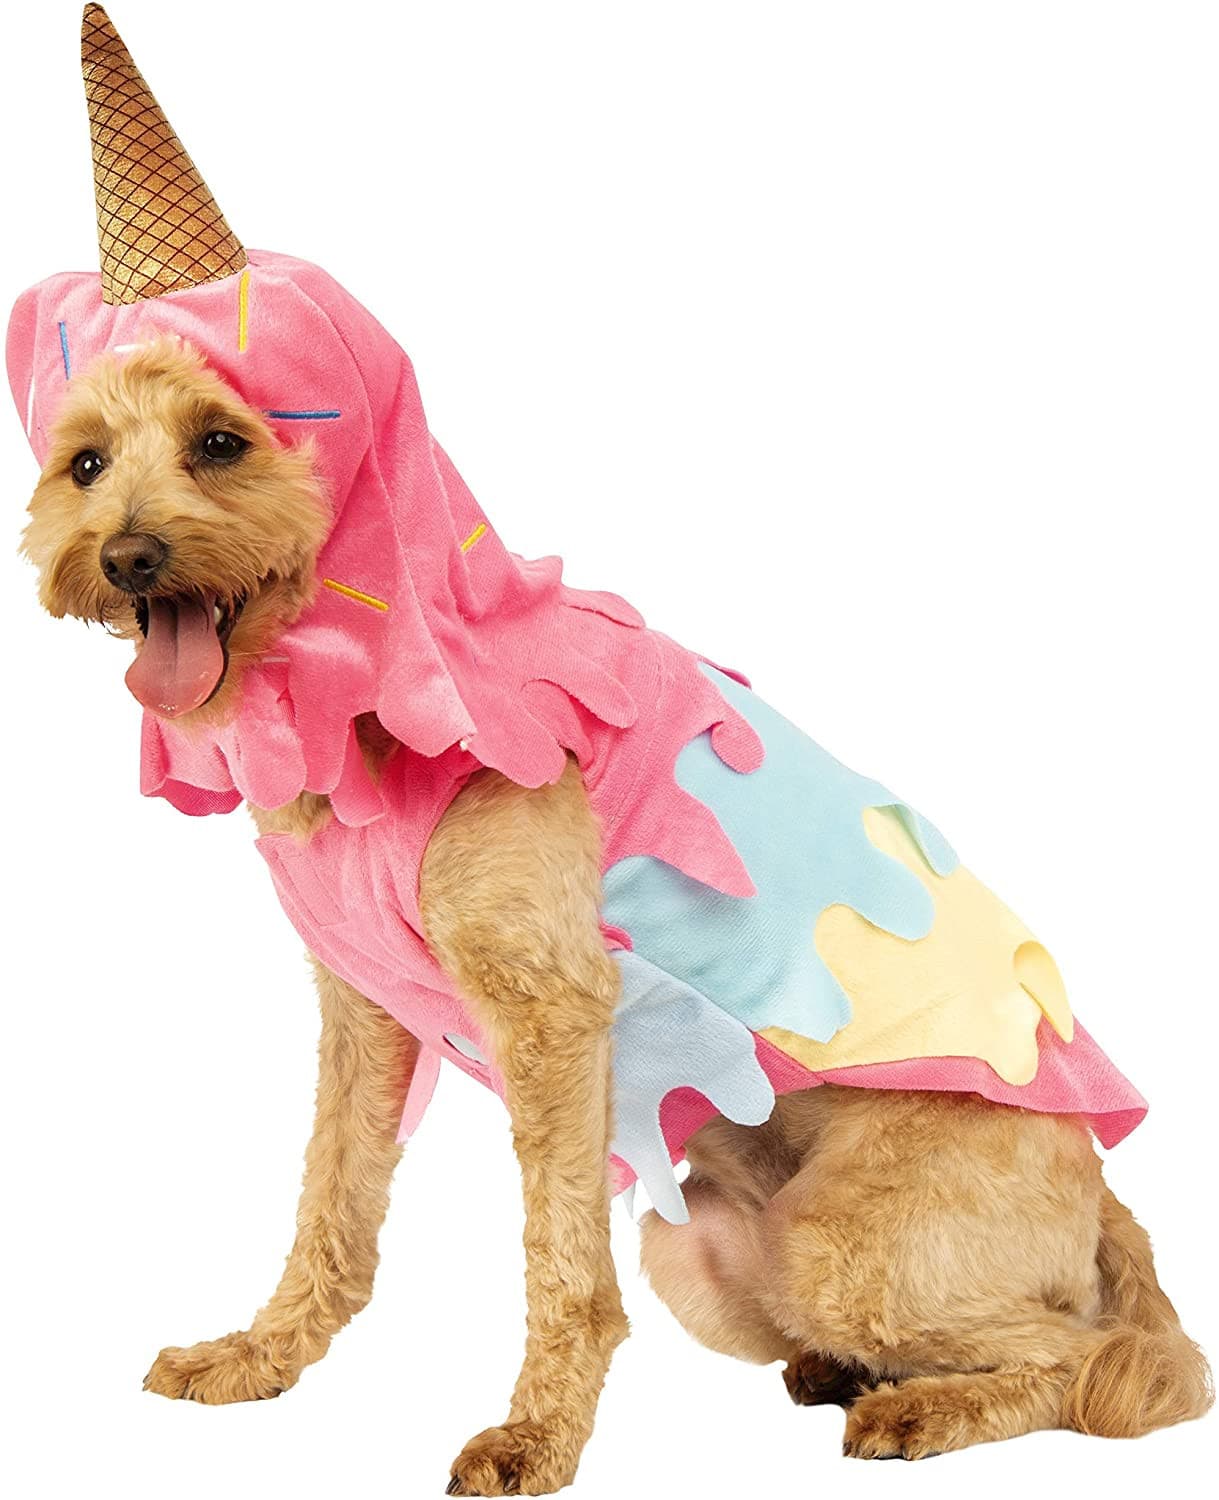 Dripping Ice Cream Cone Pet Costume.